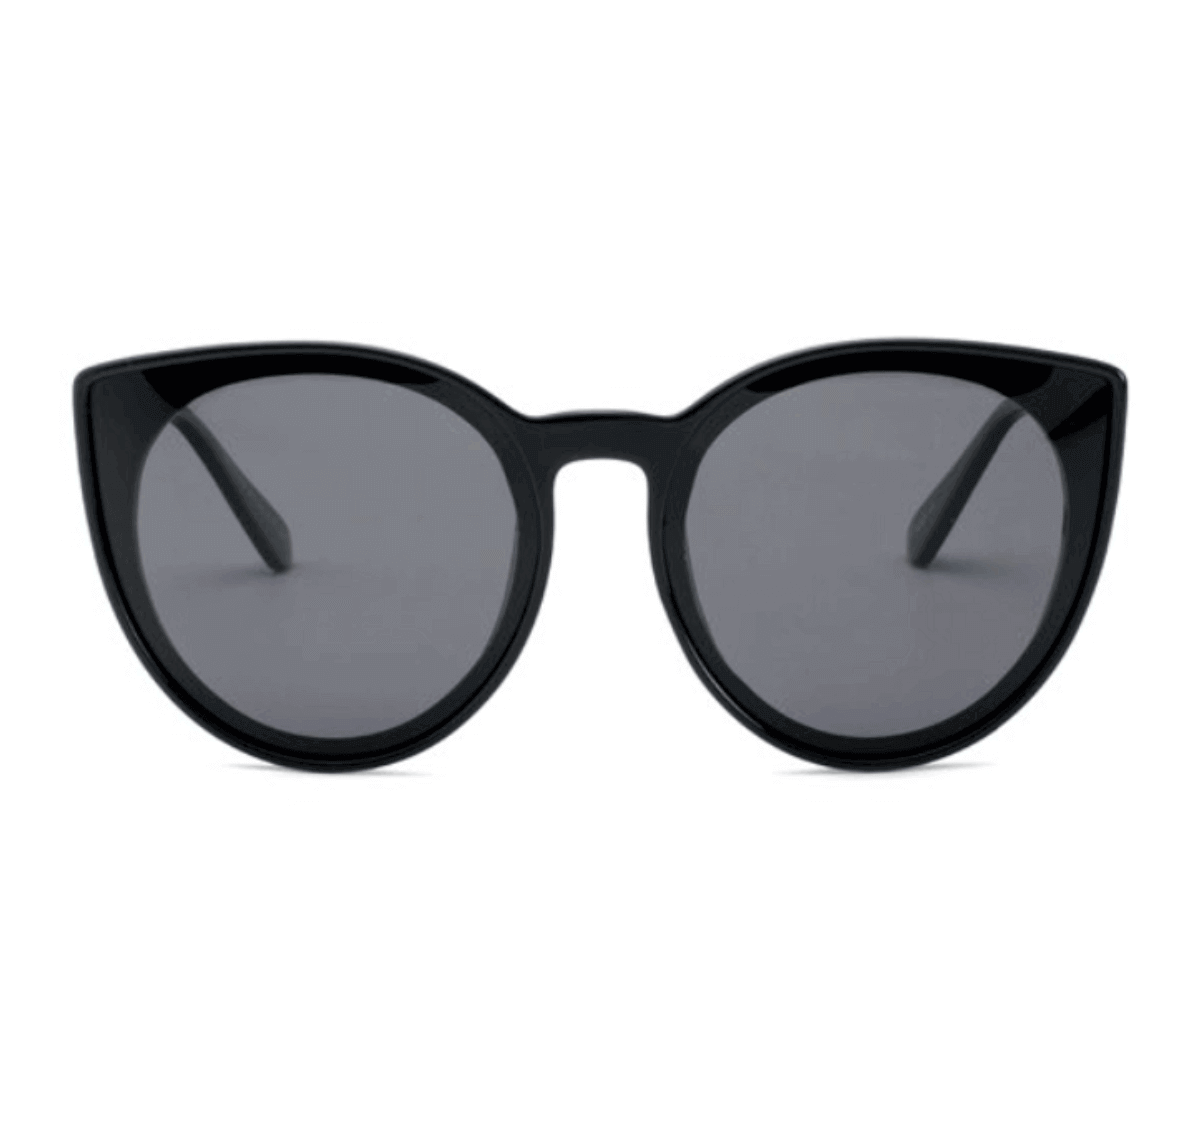 polarized wholesale sunglasses, Cat Eye Sunglasses, polarized sport sunglasses wholesale, bulk polarized sunglasses, sunglasses factory in China